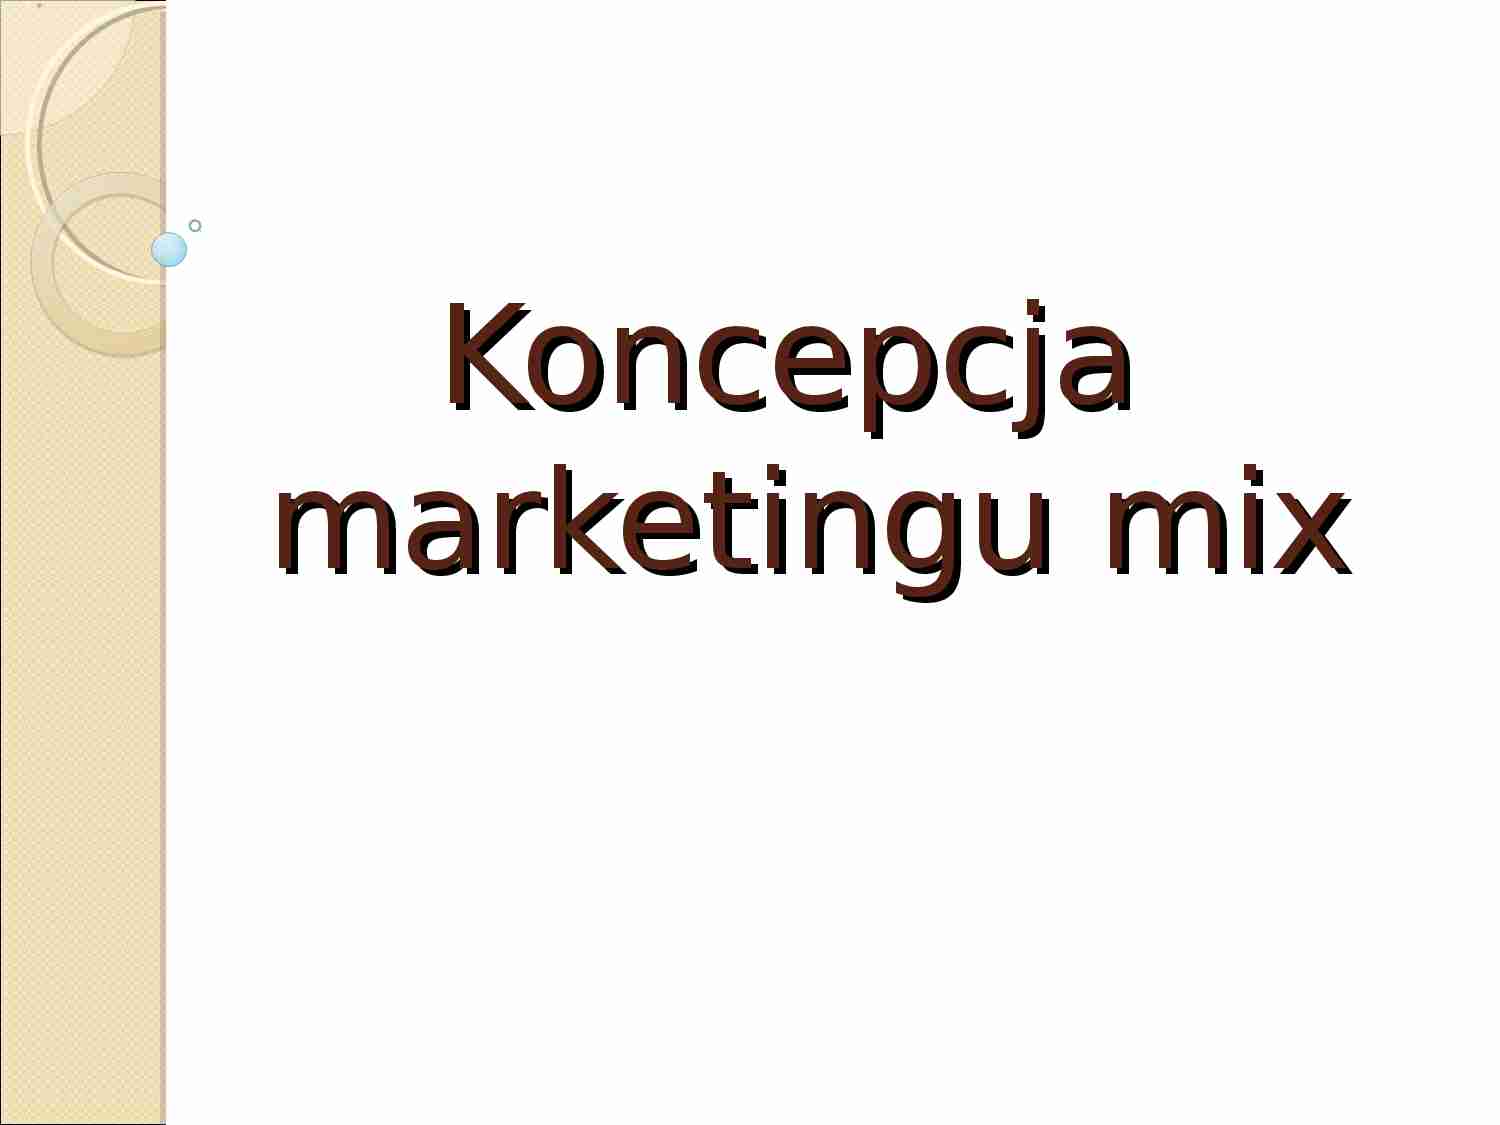 Koncepcja marketingu mix - wykład z pdstaw marketingu - strona 1